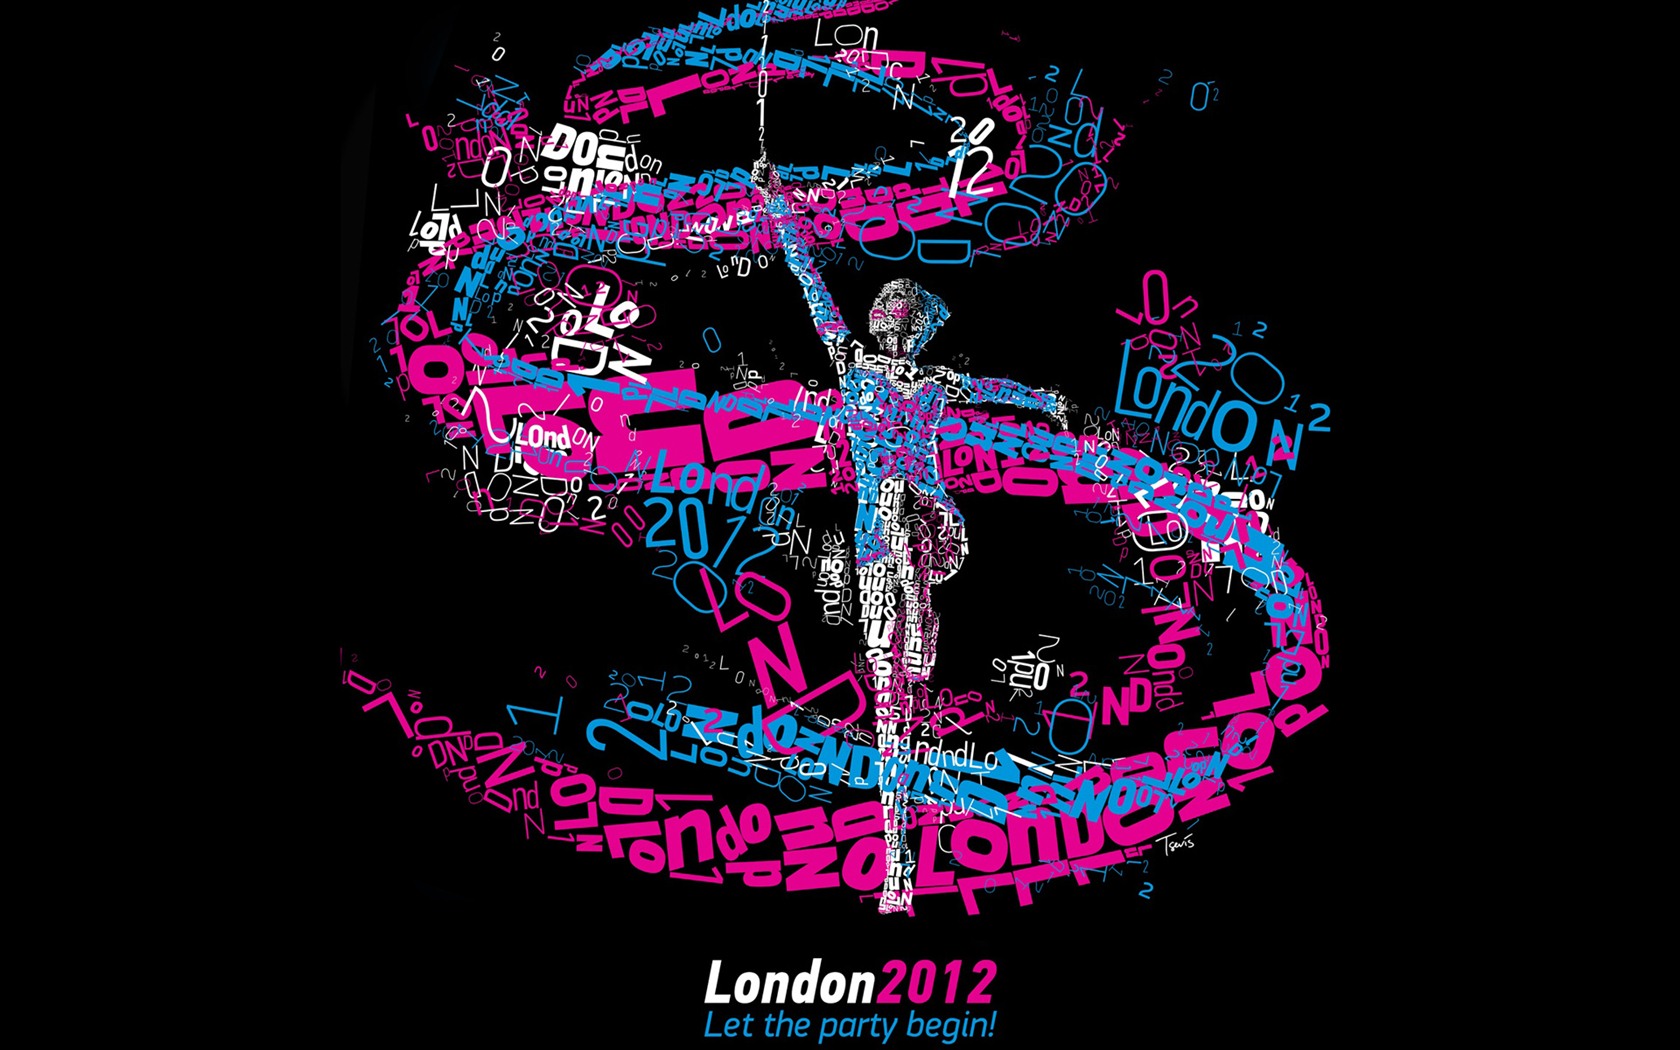 Londres 2012 Olimpiadas fondos temáticos (1) #23 - 1680x1050